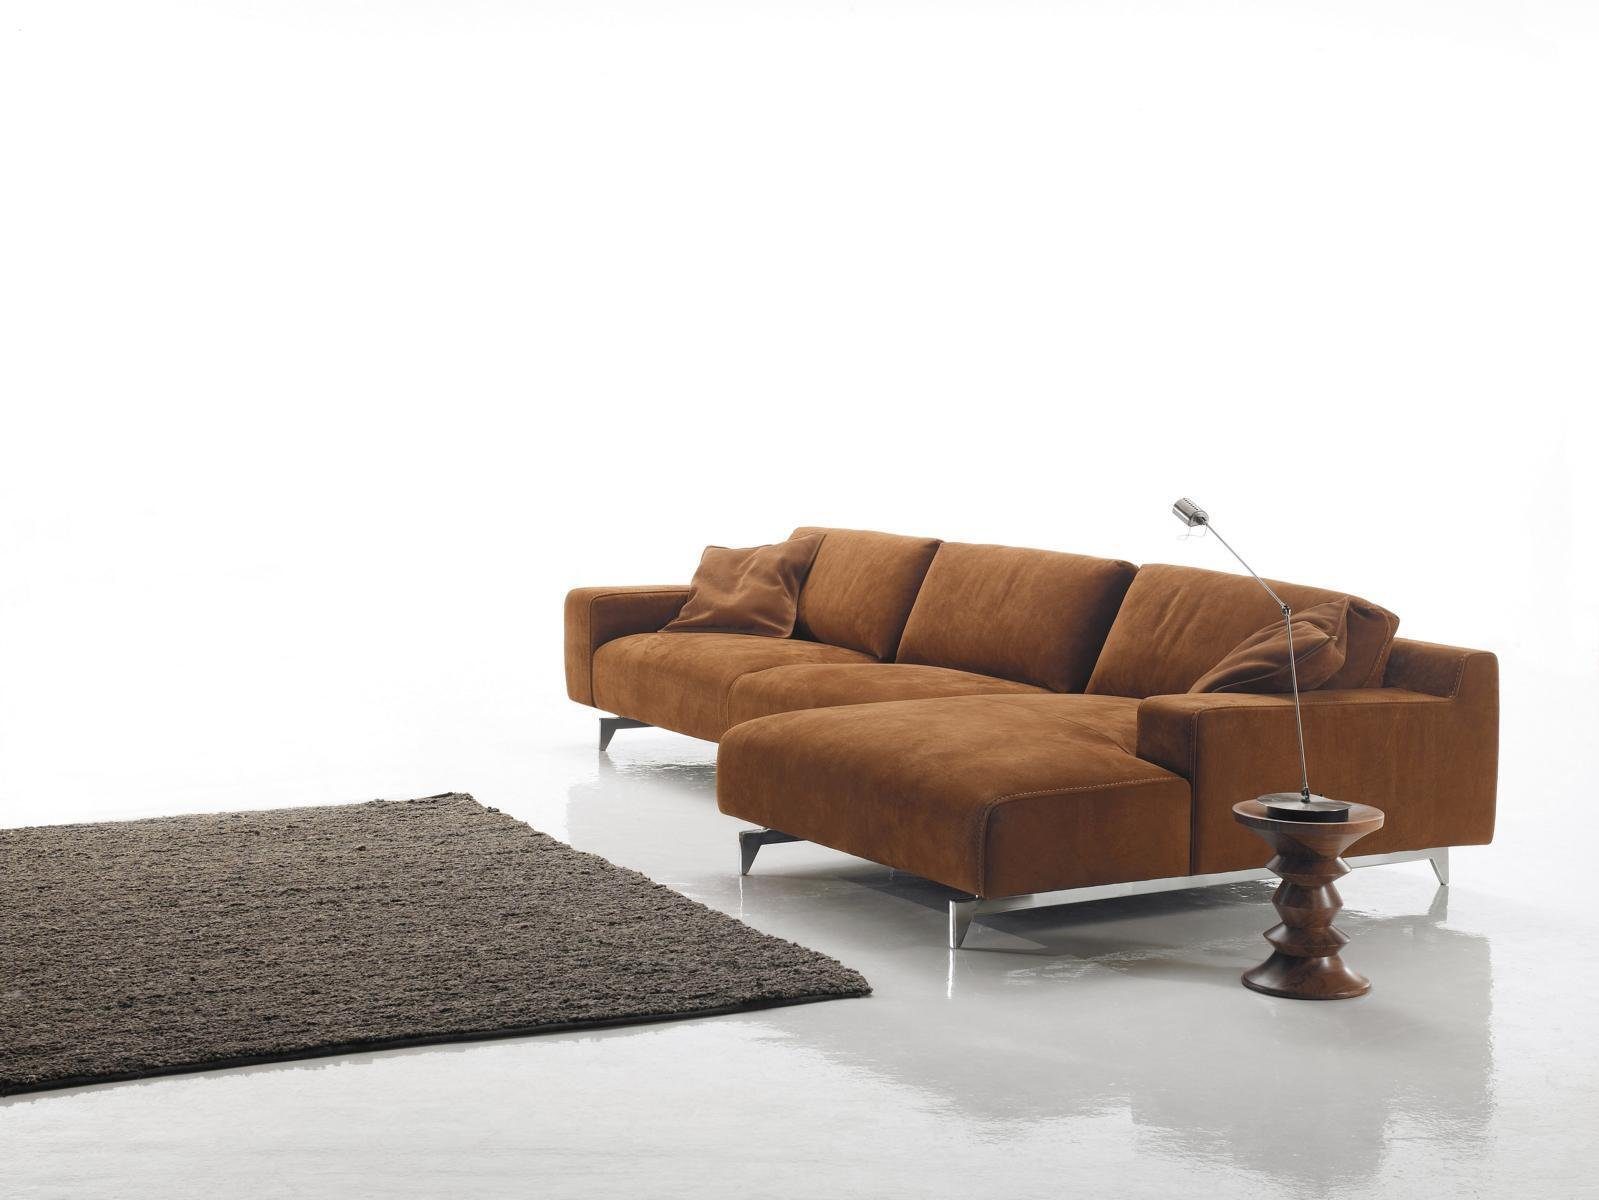 JVmoebel Braun Form Textil L Ecksofa Couch Wohnzimmer Design Sofas Polsterung Ecksofa